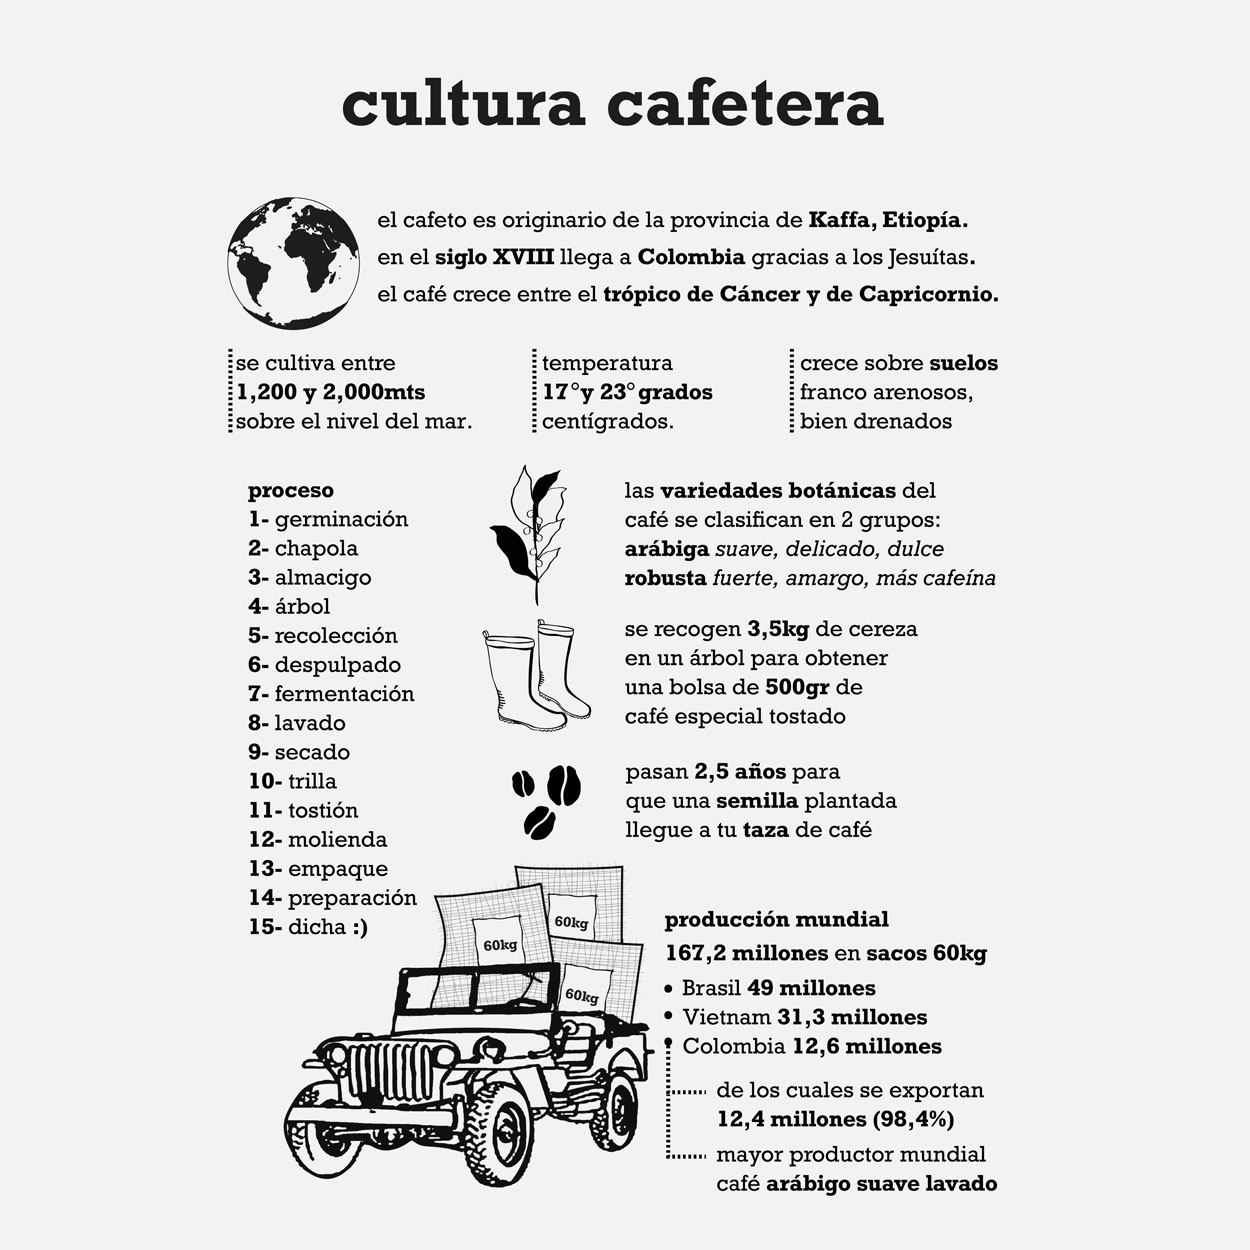 edicion_cultura_cafetera_2022_9